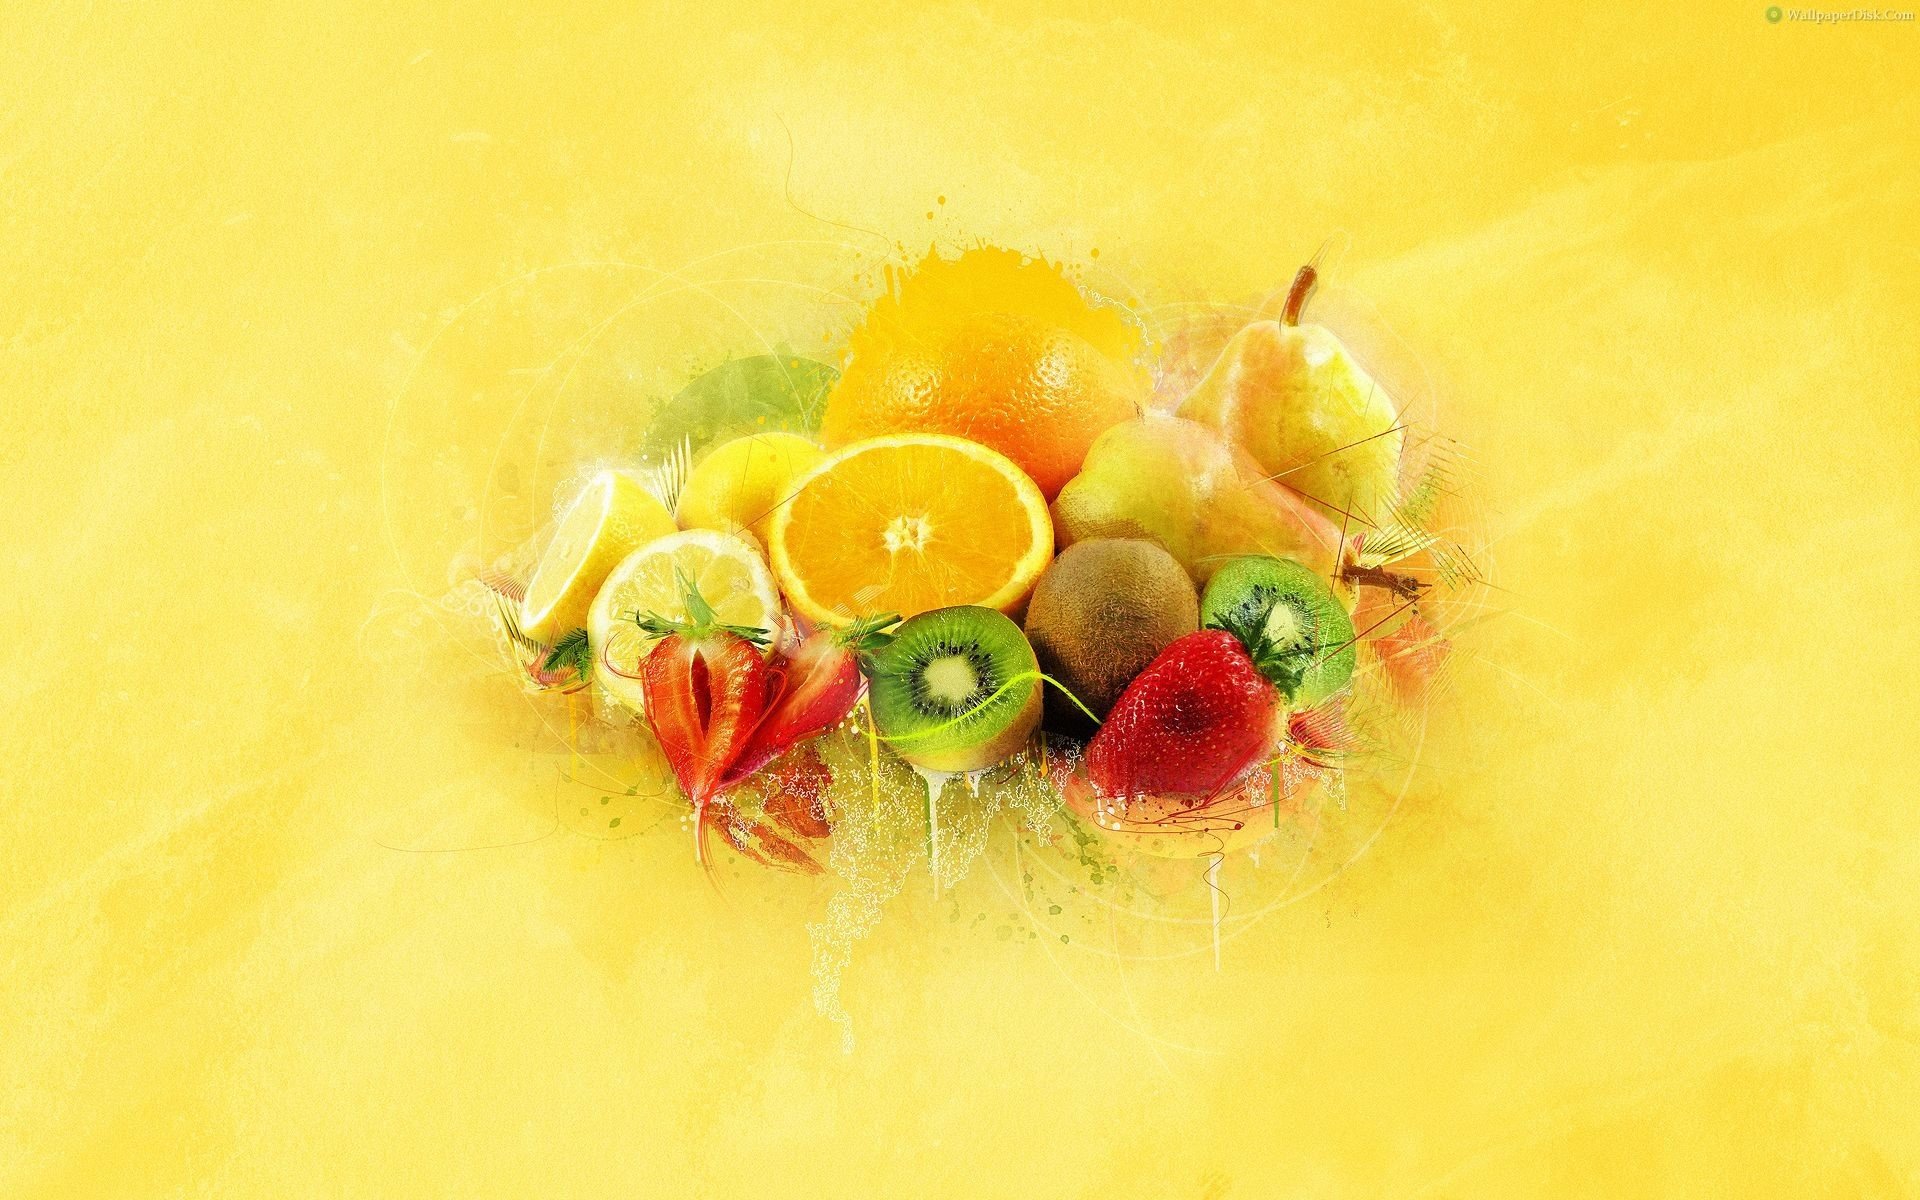 Best fruits wallpaper dekstop image